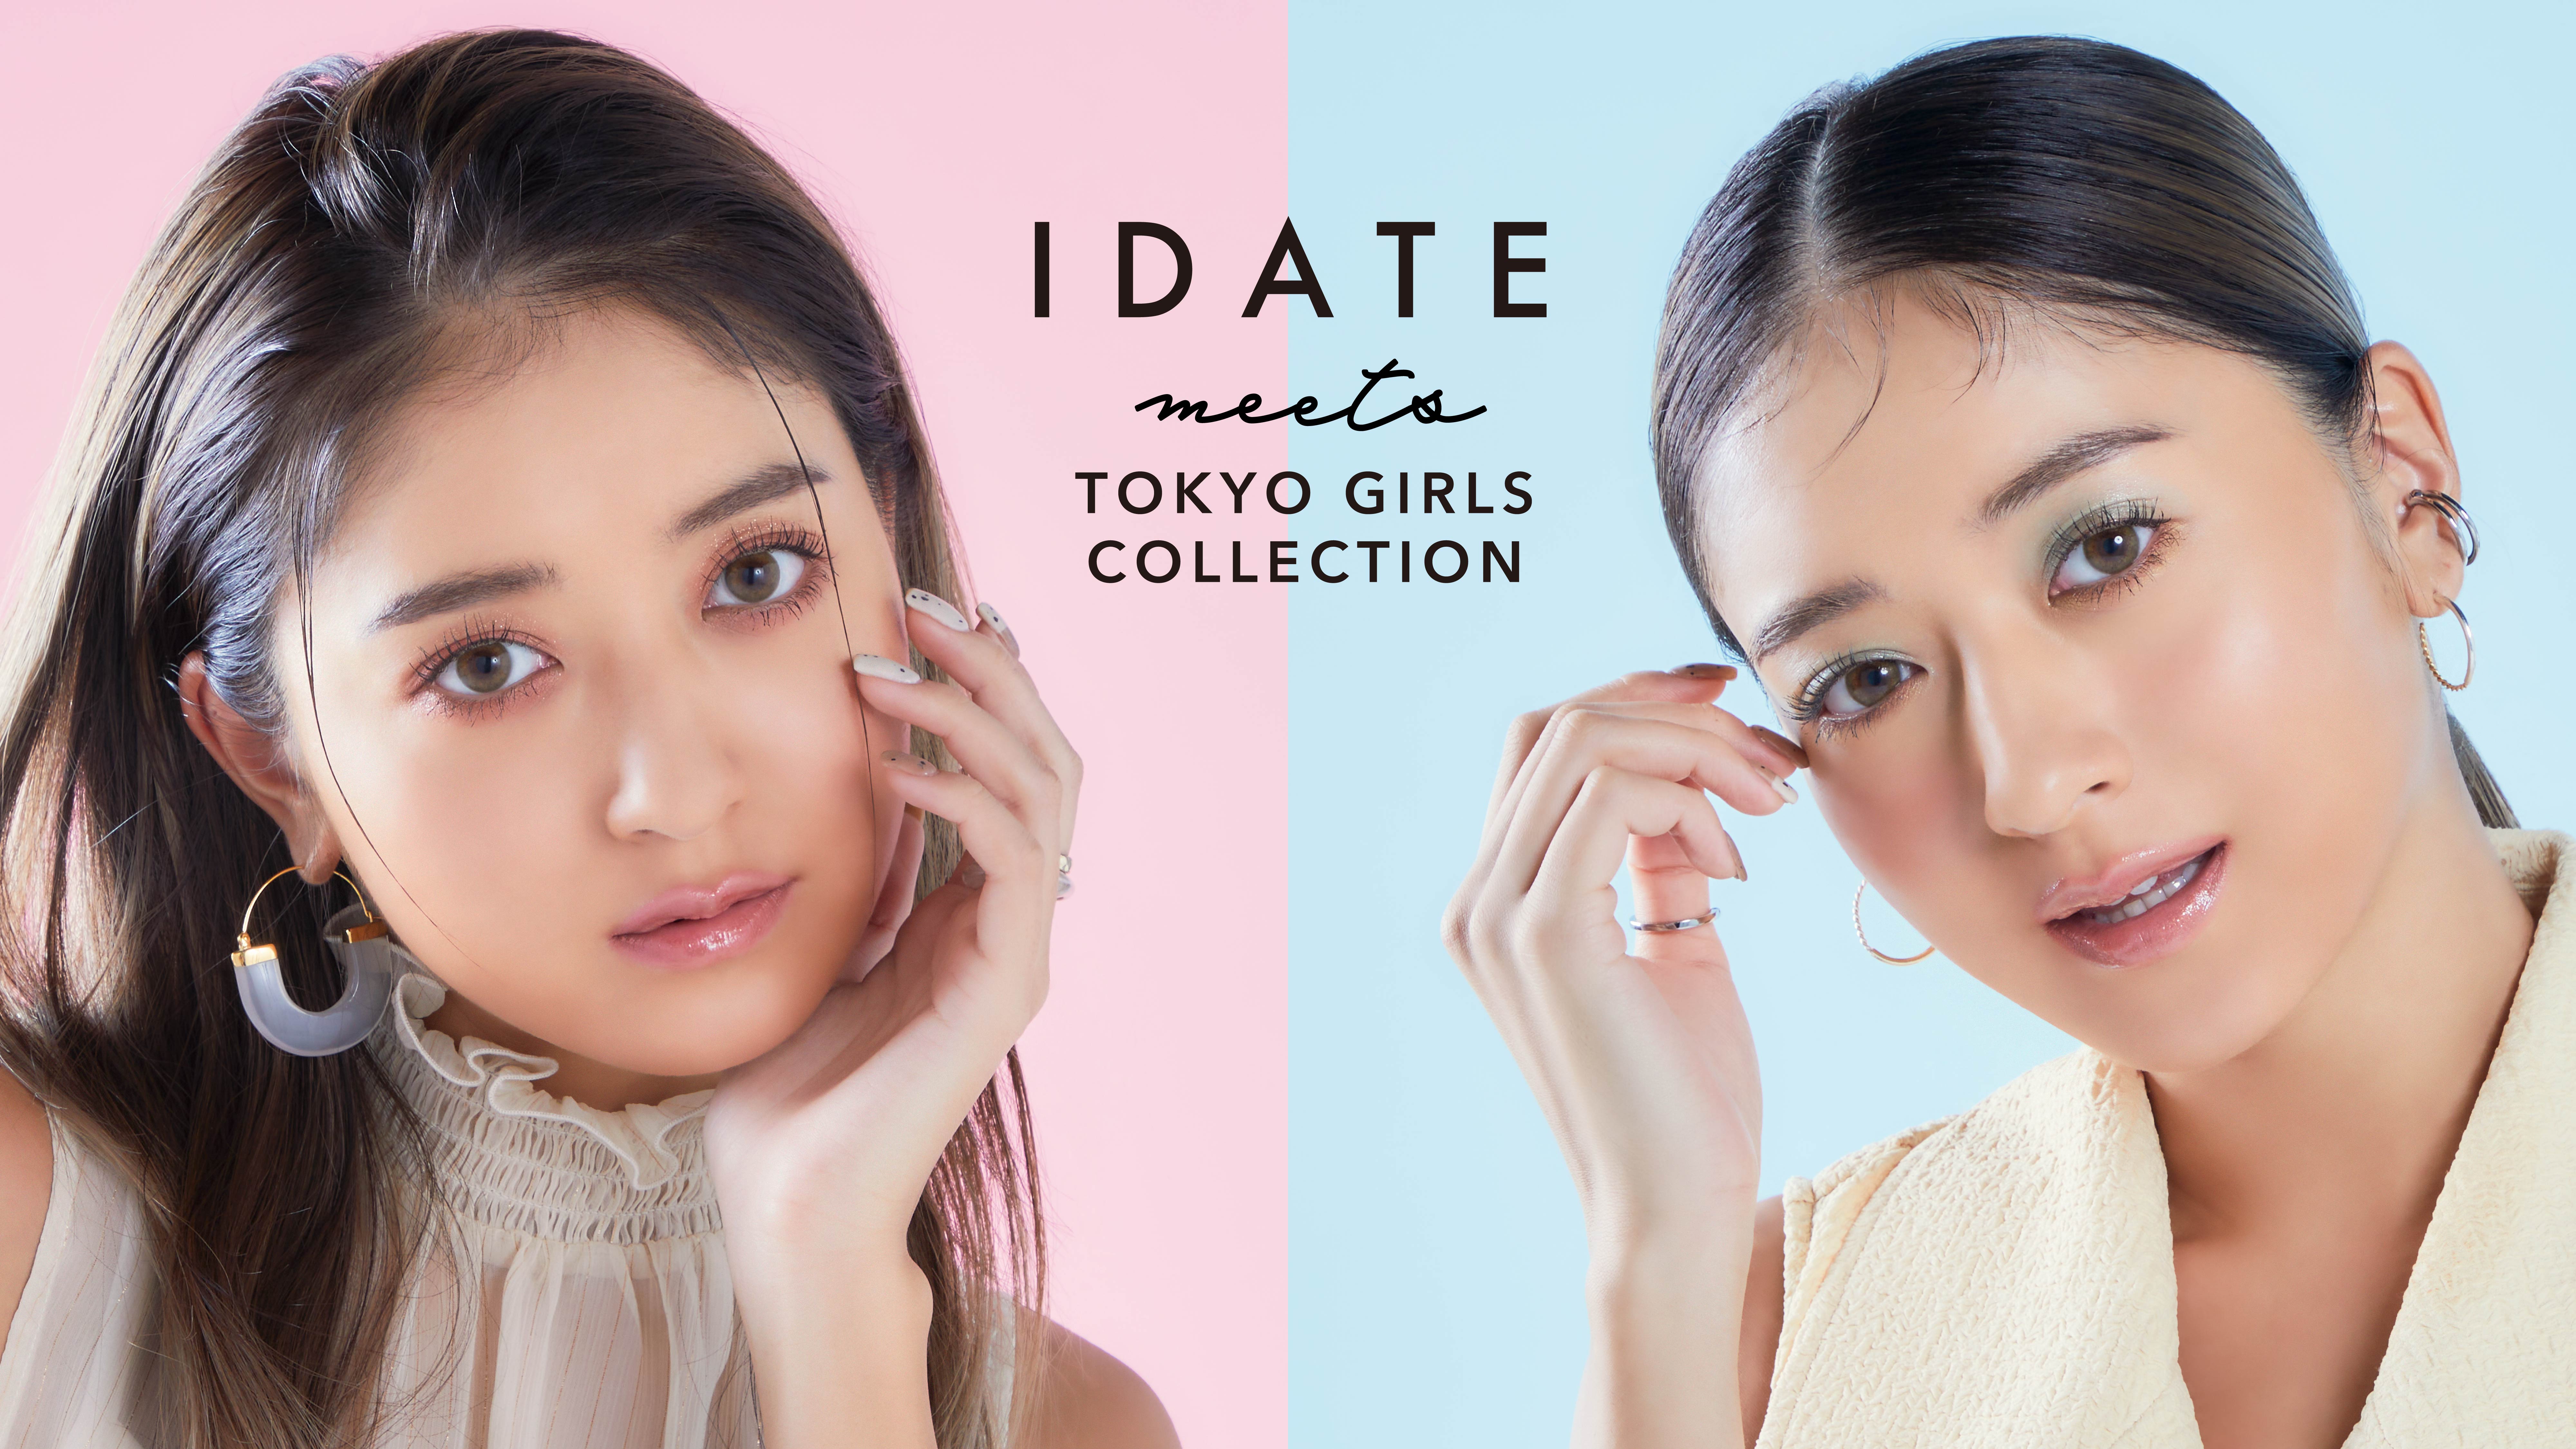 DAISO新コスメ「IDATE meets TOKYO GIRLS COLLECTION」を発表 お知らせ ダイソー